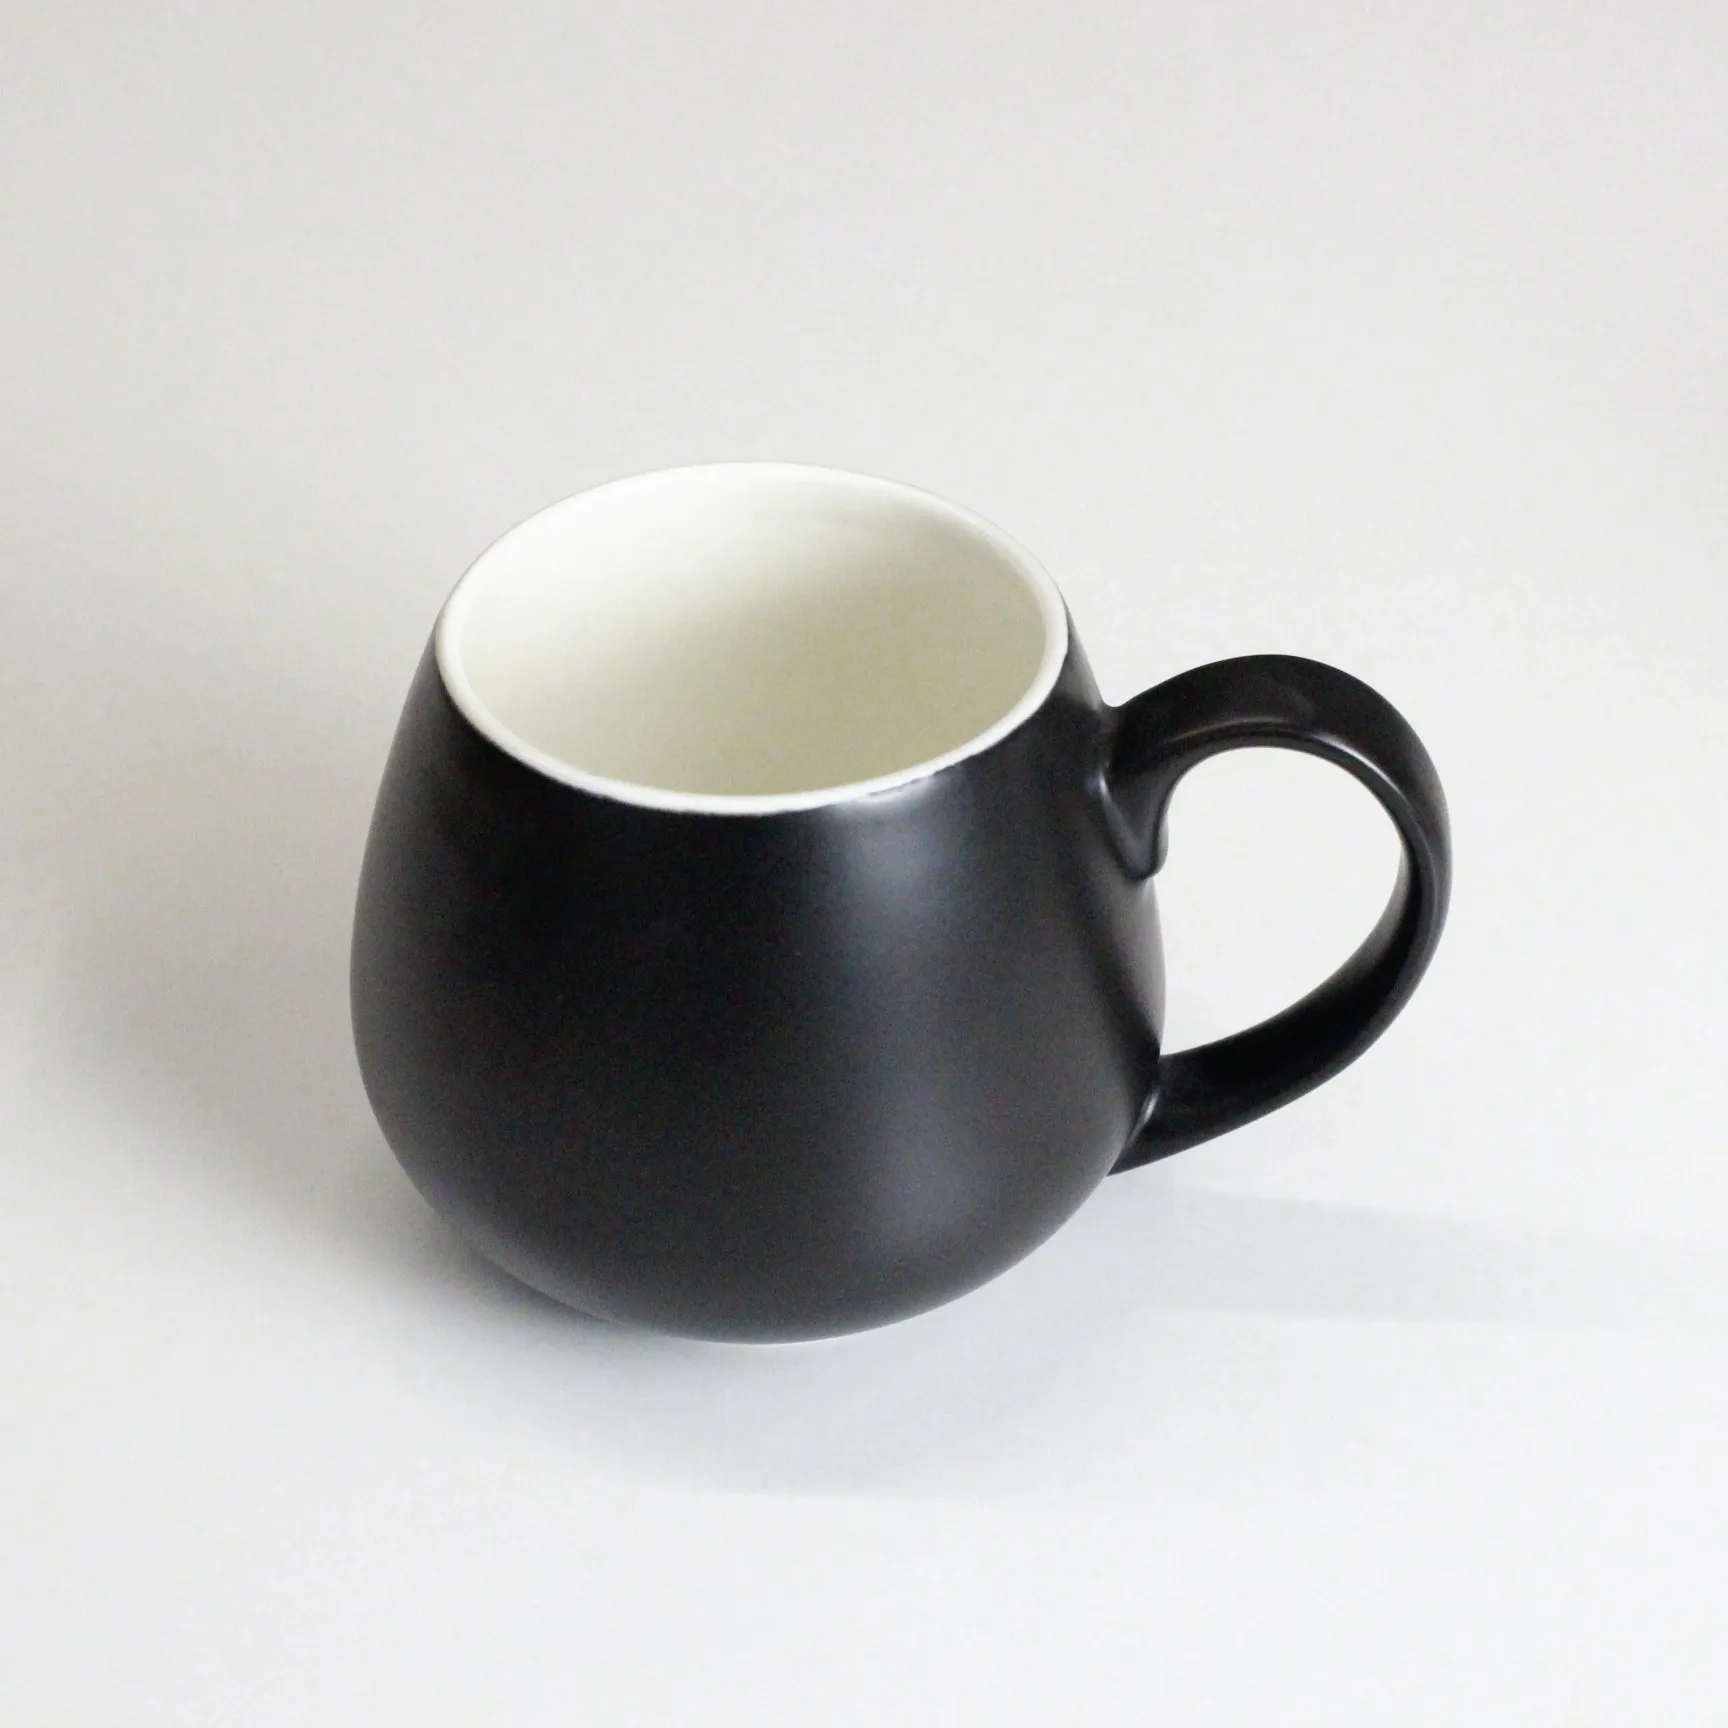 OEM מותאם אישית לוגו מודרני עגול צורת גדול קרמיקה קפה ספל גדול פורצלן קפה גביע עם ידית גדולה עבור בית משרד